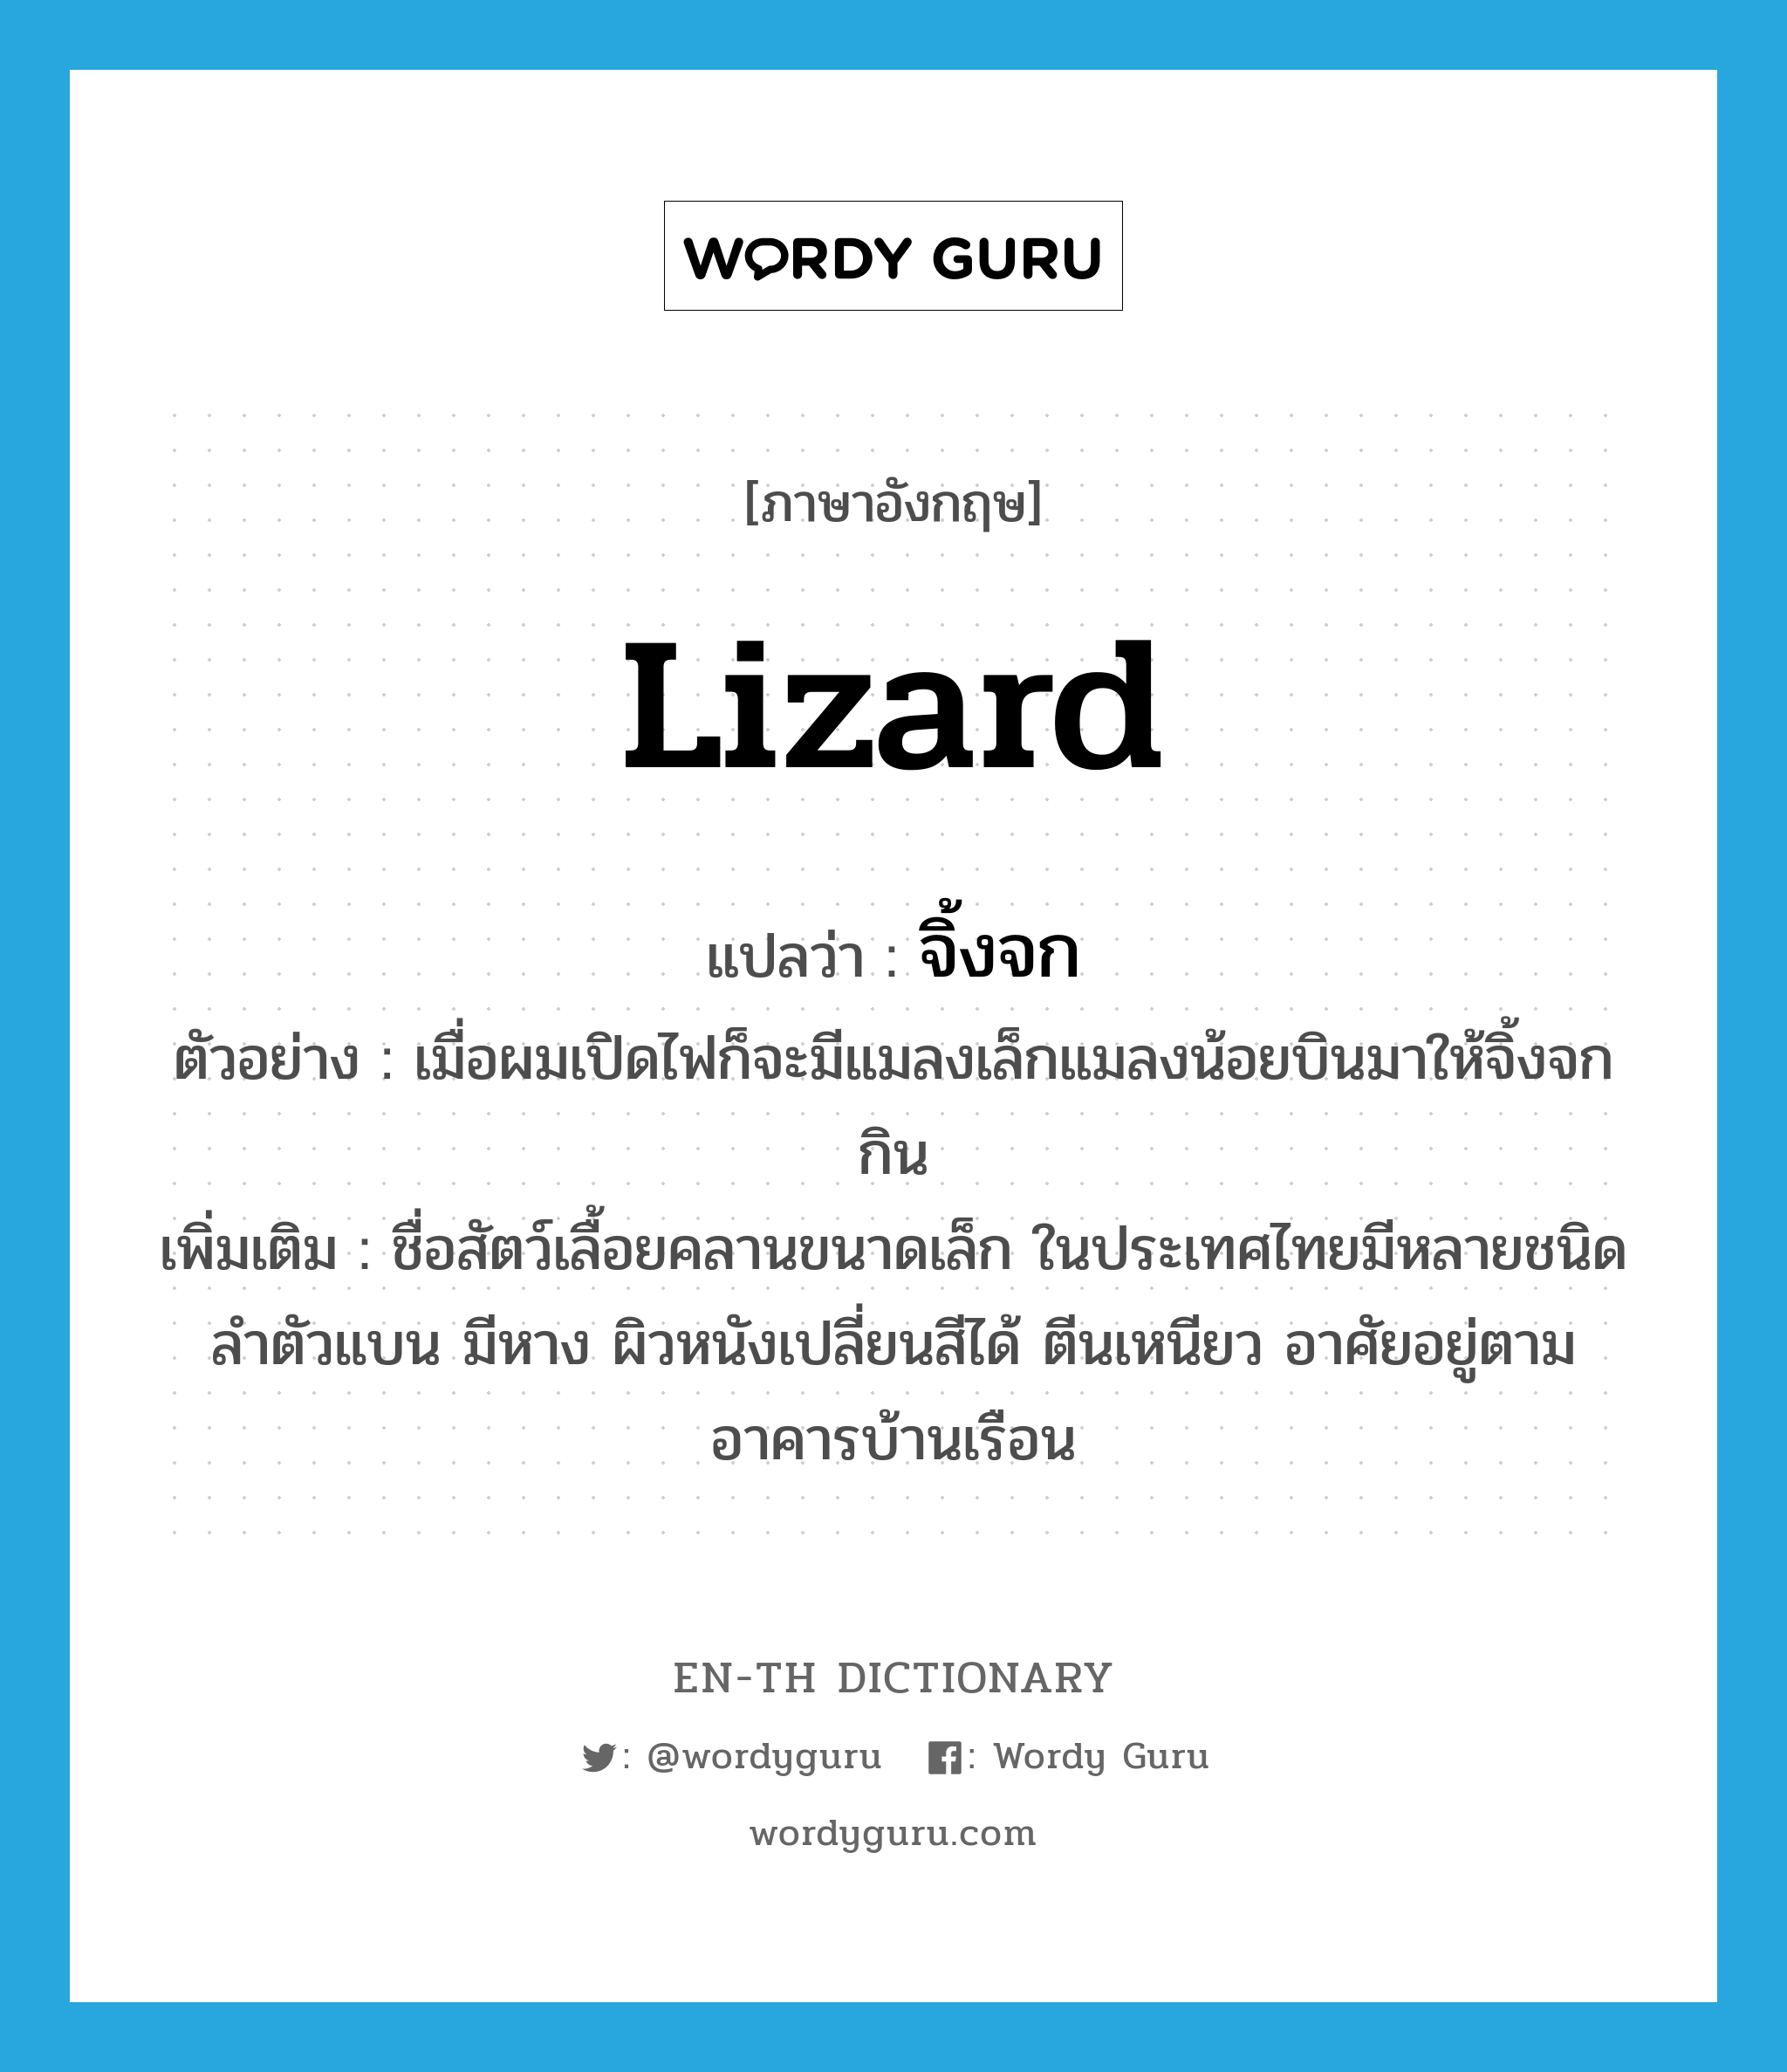 lizard แปลว่า?, คำศัพท์ภาษาอังกฤษ lizard แปลว่า จิ้งจก ประเภท N ตัวอย่าง เมื่อผมเปิดไฟก็จะมีแมลงเล็กแมลงน้อยบินมาให้จิ้งจกกิน เพิ่มเติม ชื่อสัตว์เลื้อยคลานขนาดเล็ก ในประเทศไทยมีหลายชนิด ลำตัวแบน มีหาง ผิวหนังเปลี่ยนสีได้ ตีนเหนียว อาศัยอยู่ตามอาคารบ้านเรือน หมวด N